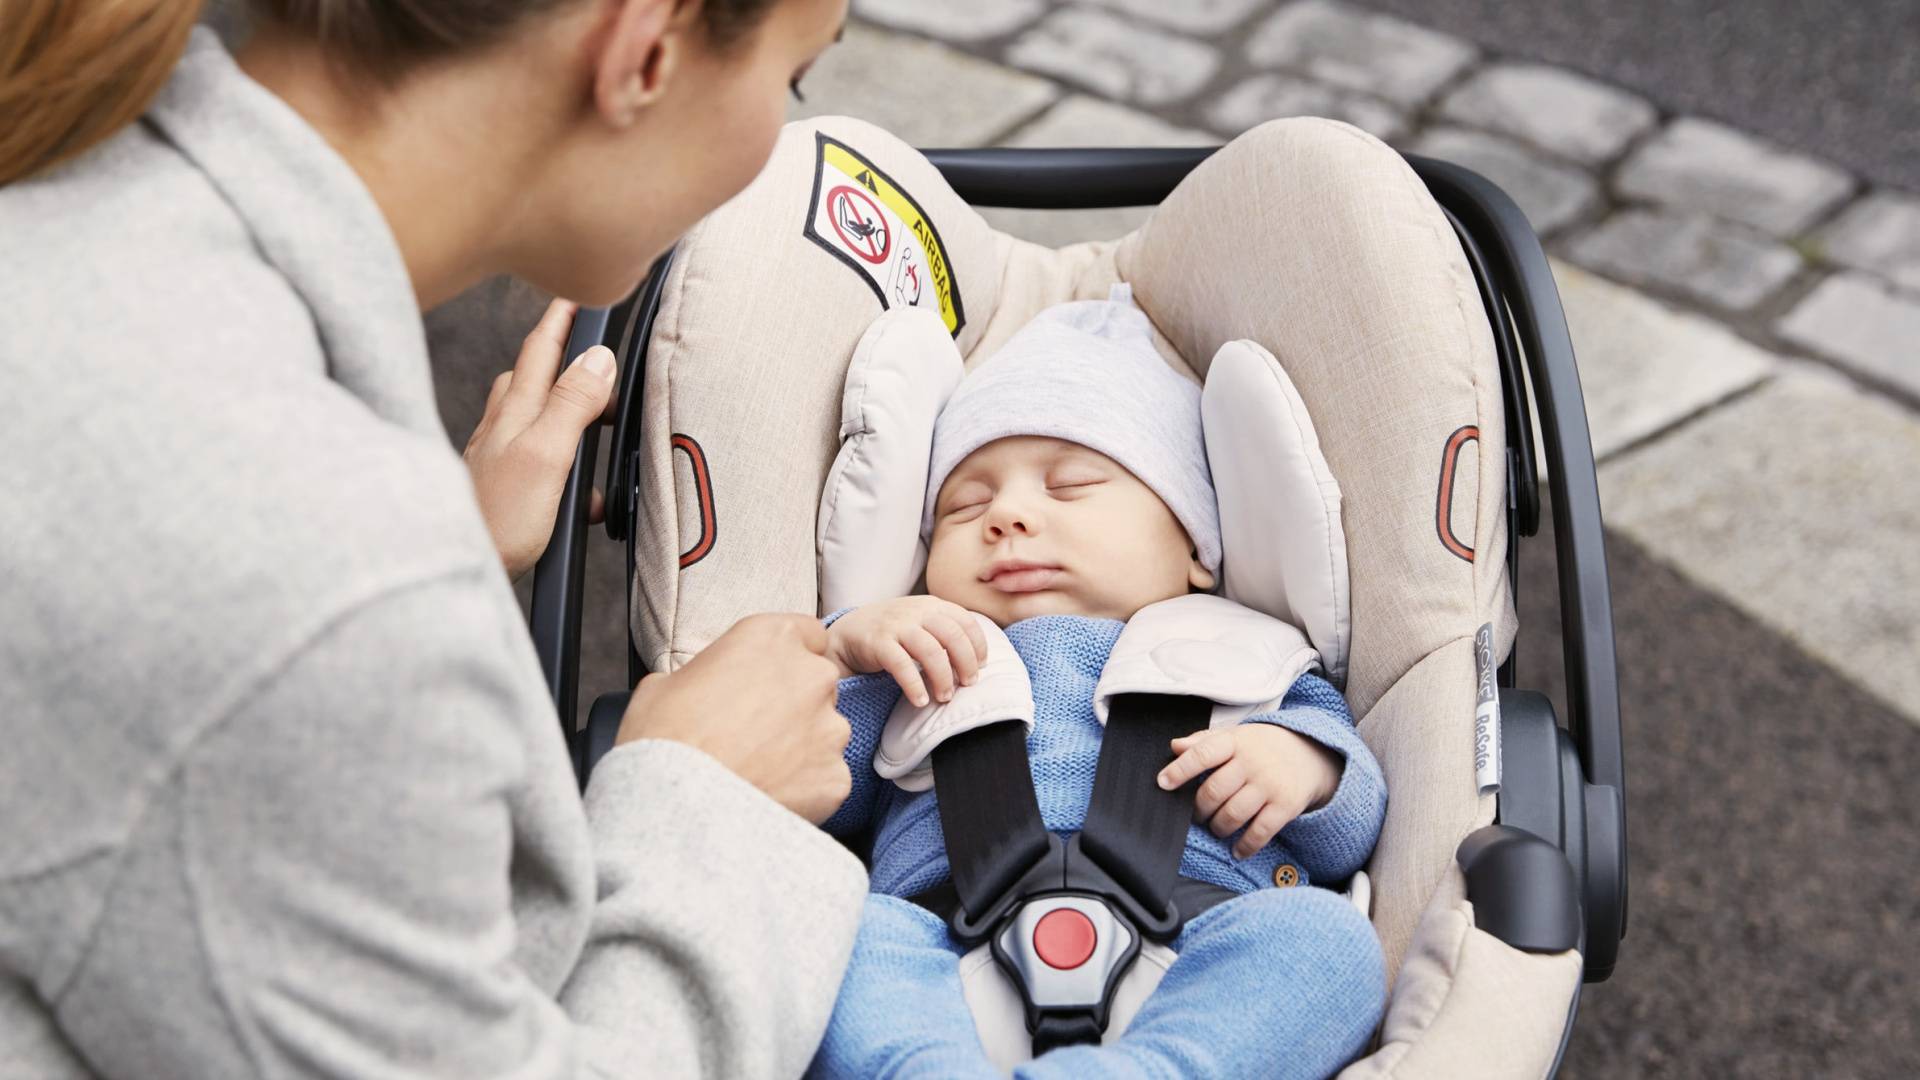 Автолюлька для новорожденных: люлька в машину с лежачим положением для ребёнка, модель "0+", как правильно положить грудничка и как выбрать детское кресло